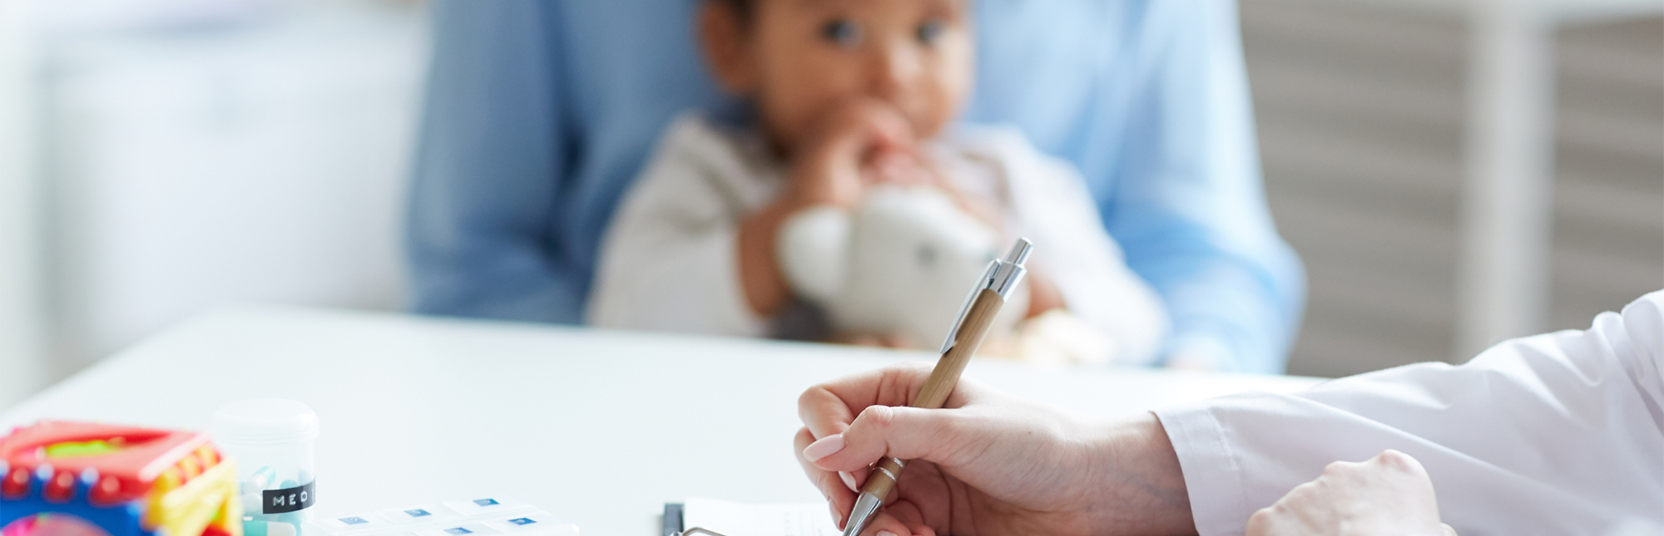 Autismo e diagnosi precoce: in Lombardia la telemedicina collega i pediatri con i servizi specialistici di Neuropsichiatria Infantile